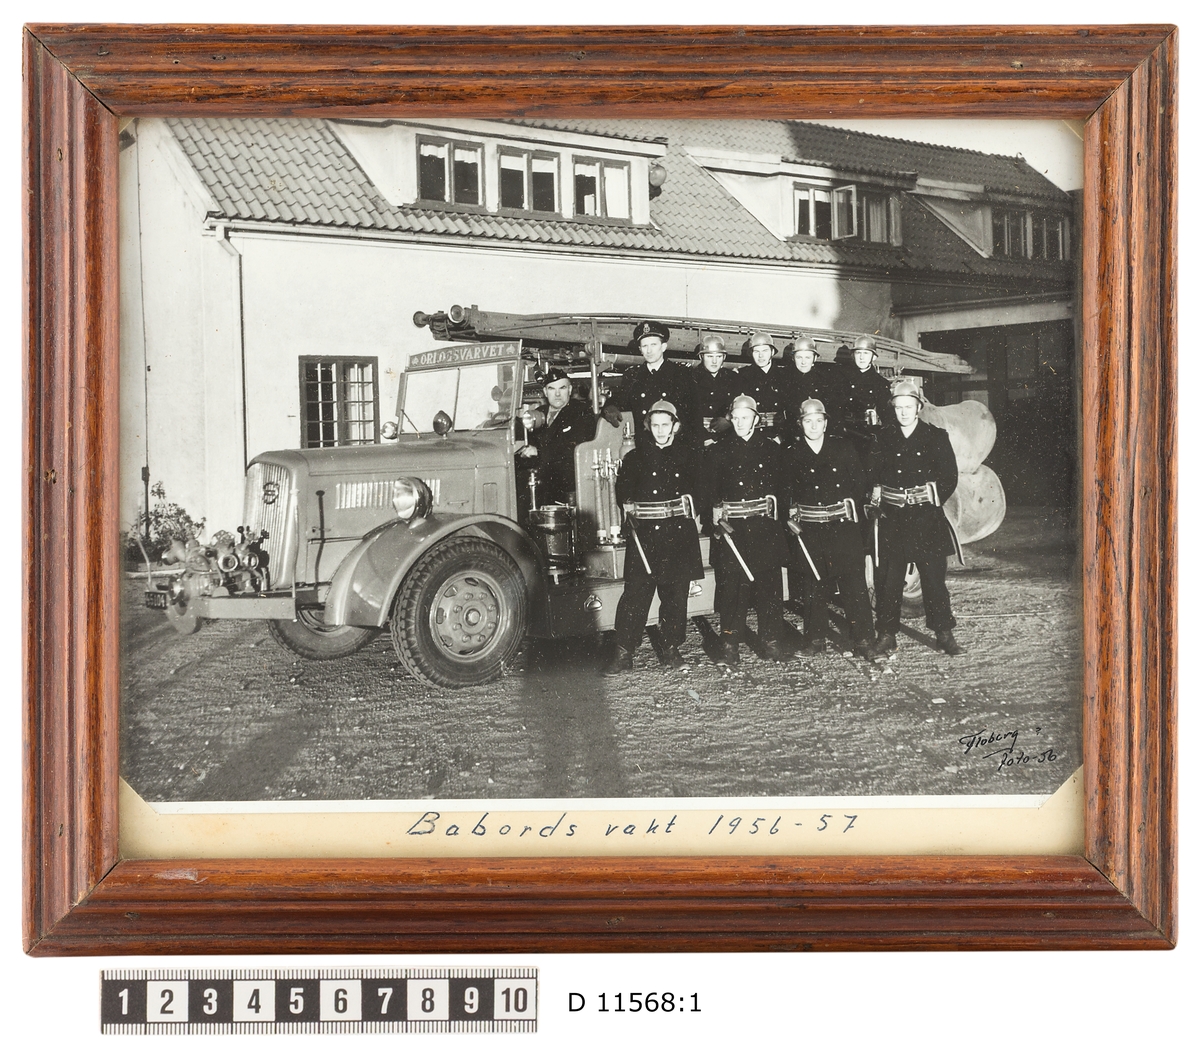 Bilden visar brandmän från brandkåren i Karlskronas örlogsvarv som har tagit uppställning för en gruppfoto framför sin brandbil och brandstationen.